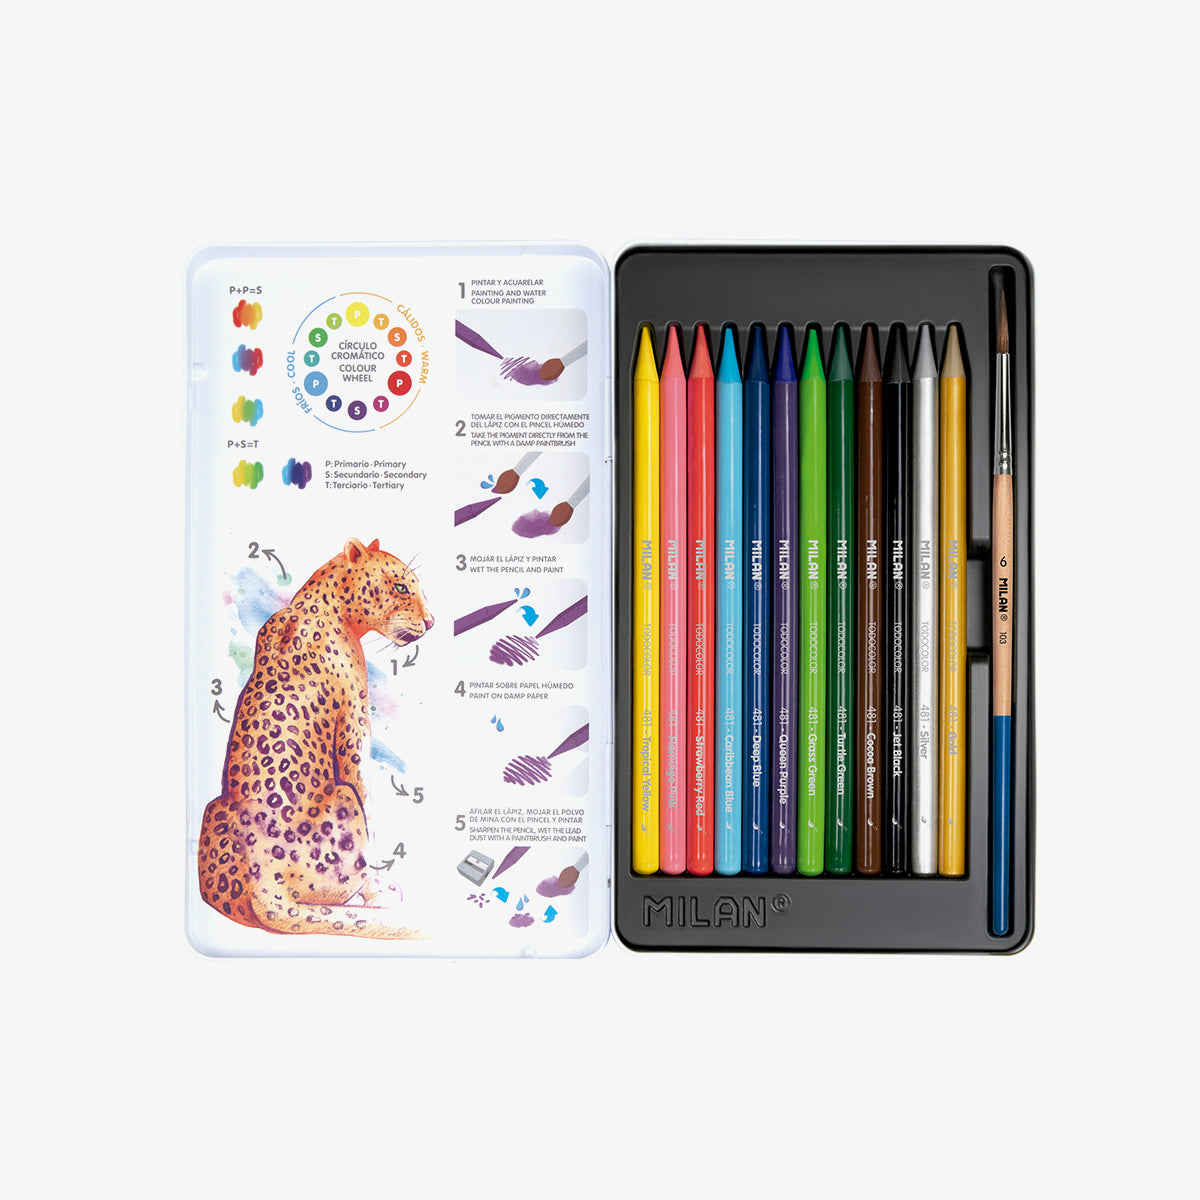 12 llapis de colors aquarel·lables tot mina + pinzell, en capsa metàl·lica